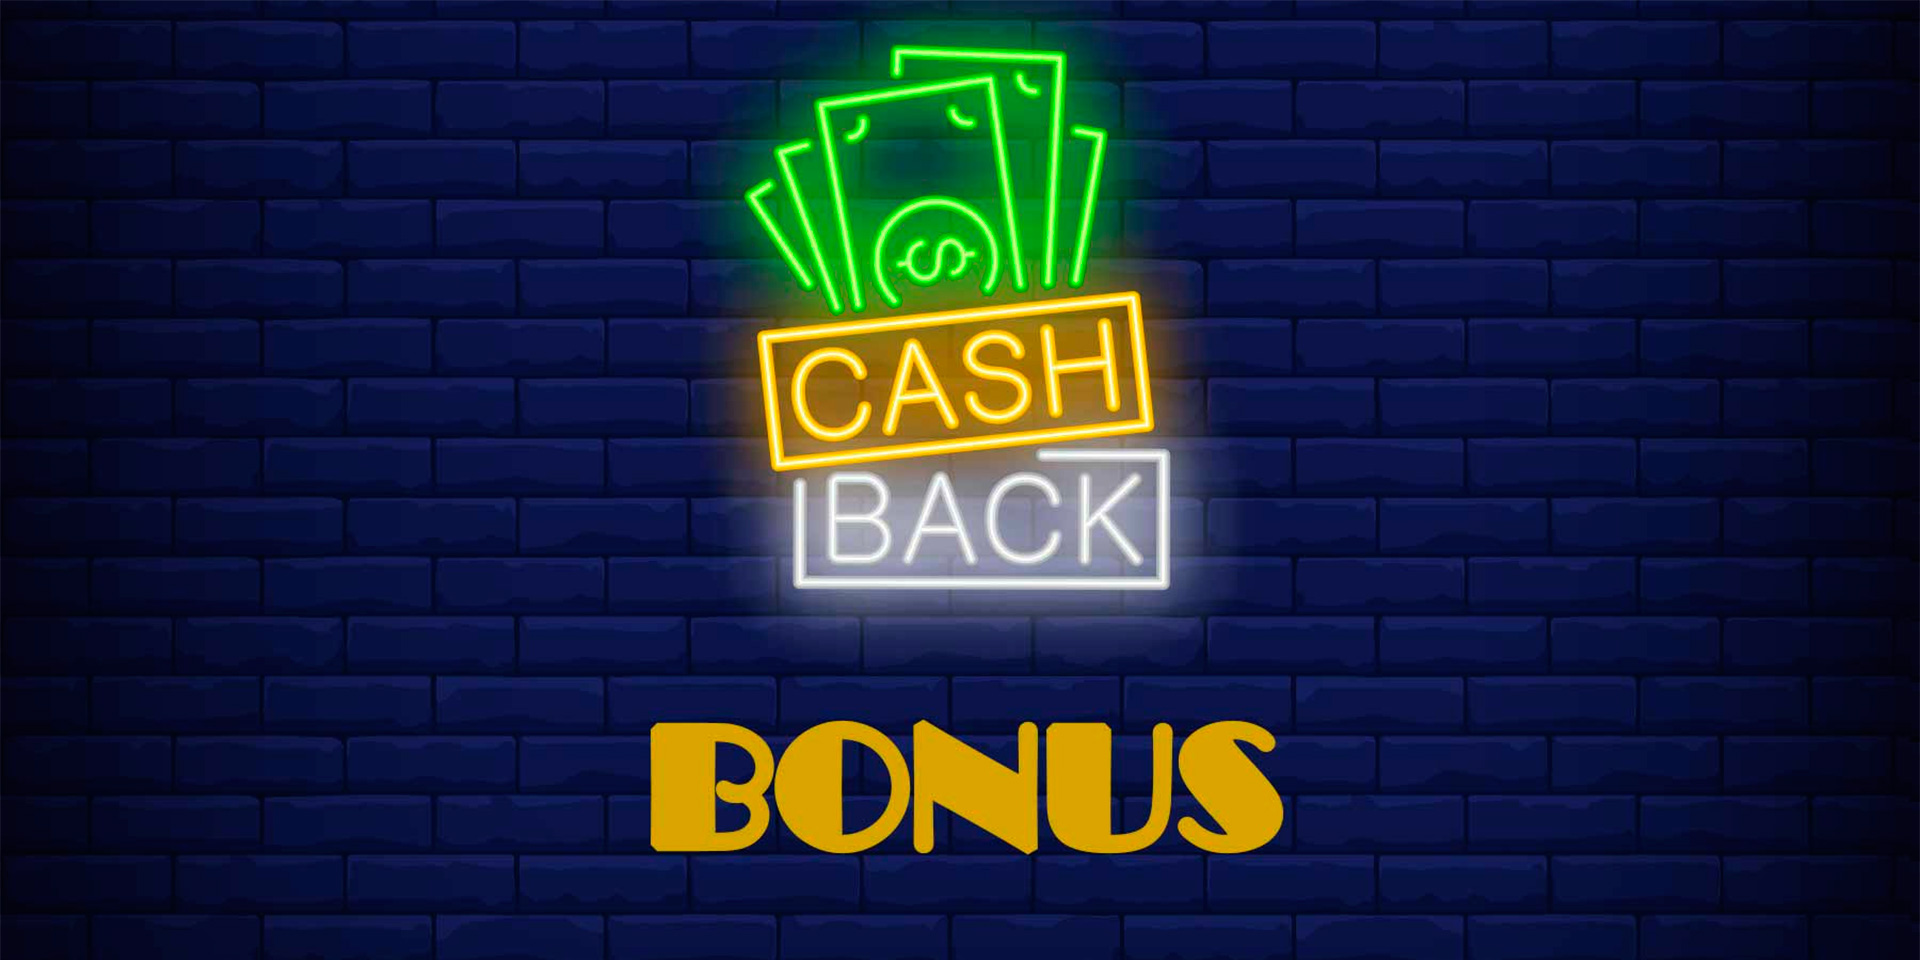 cashback bonus